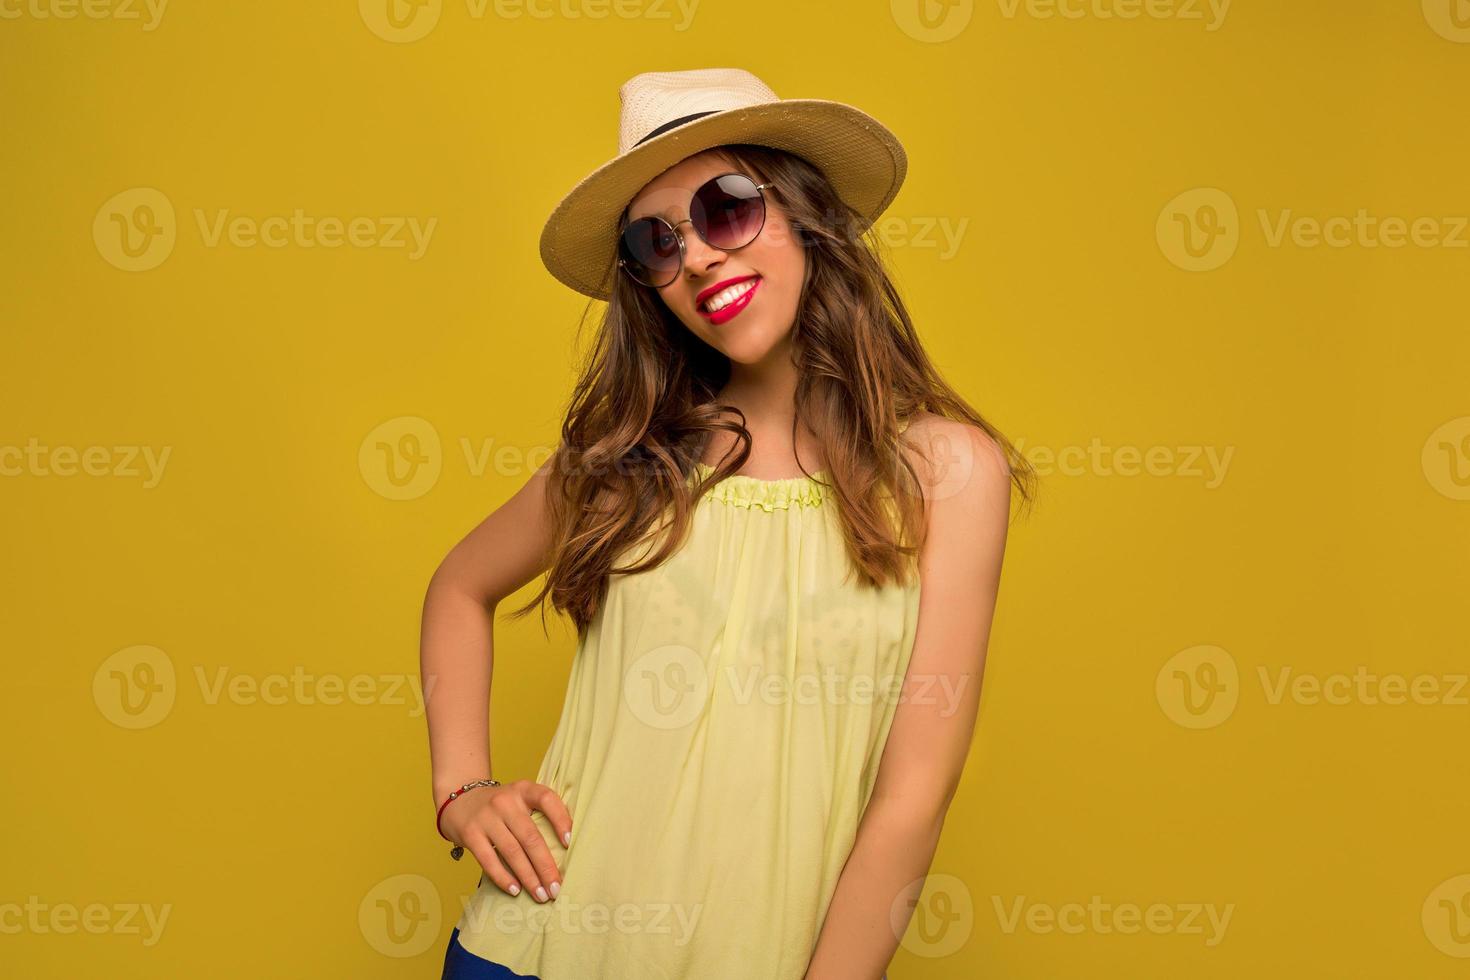 underbar brunett tjej i solglasögon och hatt poserar på gul bakgrund med ett glatt leende. skrattande kvinnlig modell i elegant klänning i studio foto